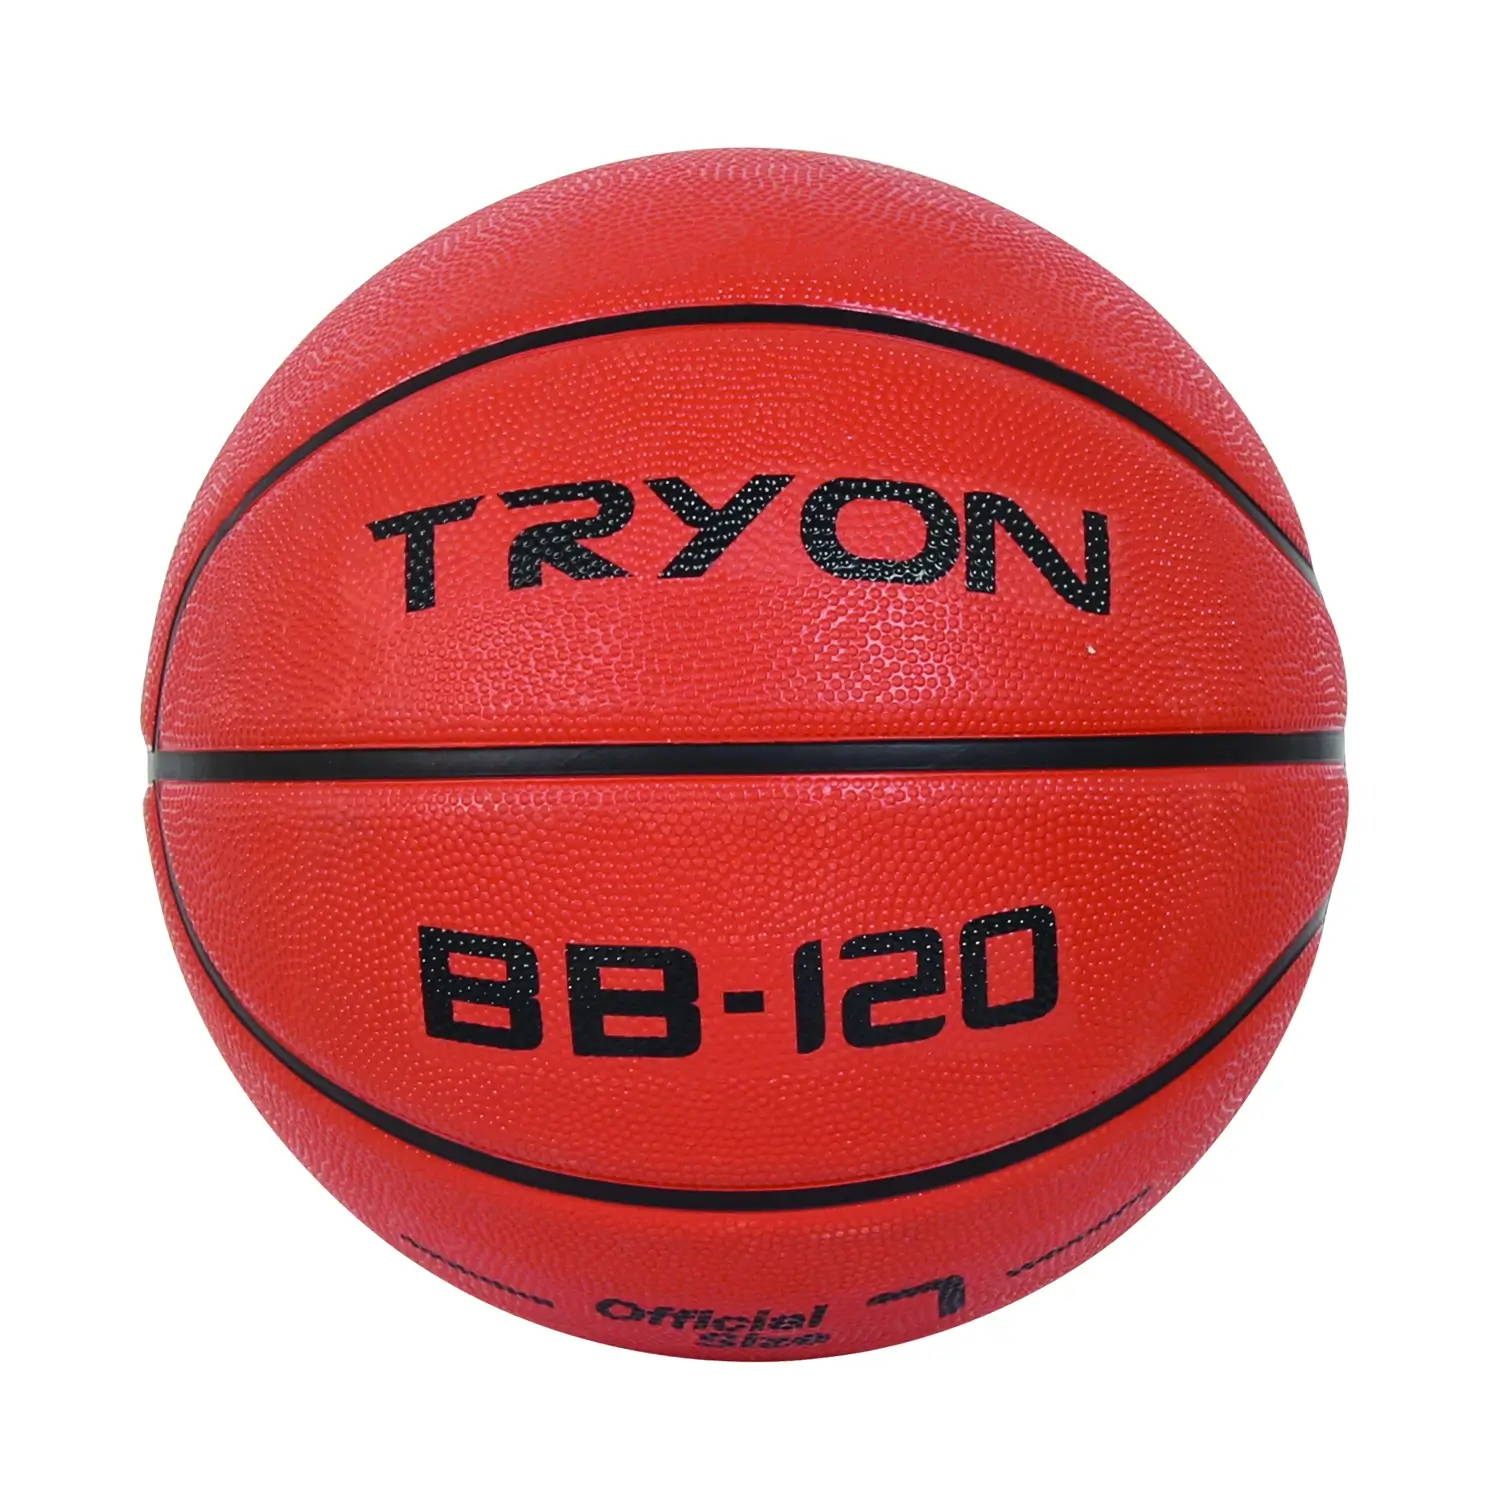 TRYON Basketbol Topu Bb-120 5 No Kahverengi